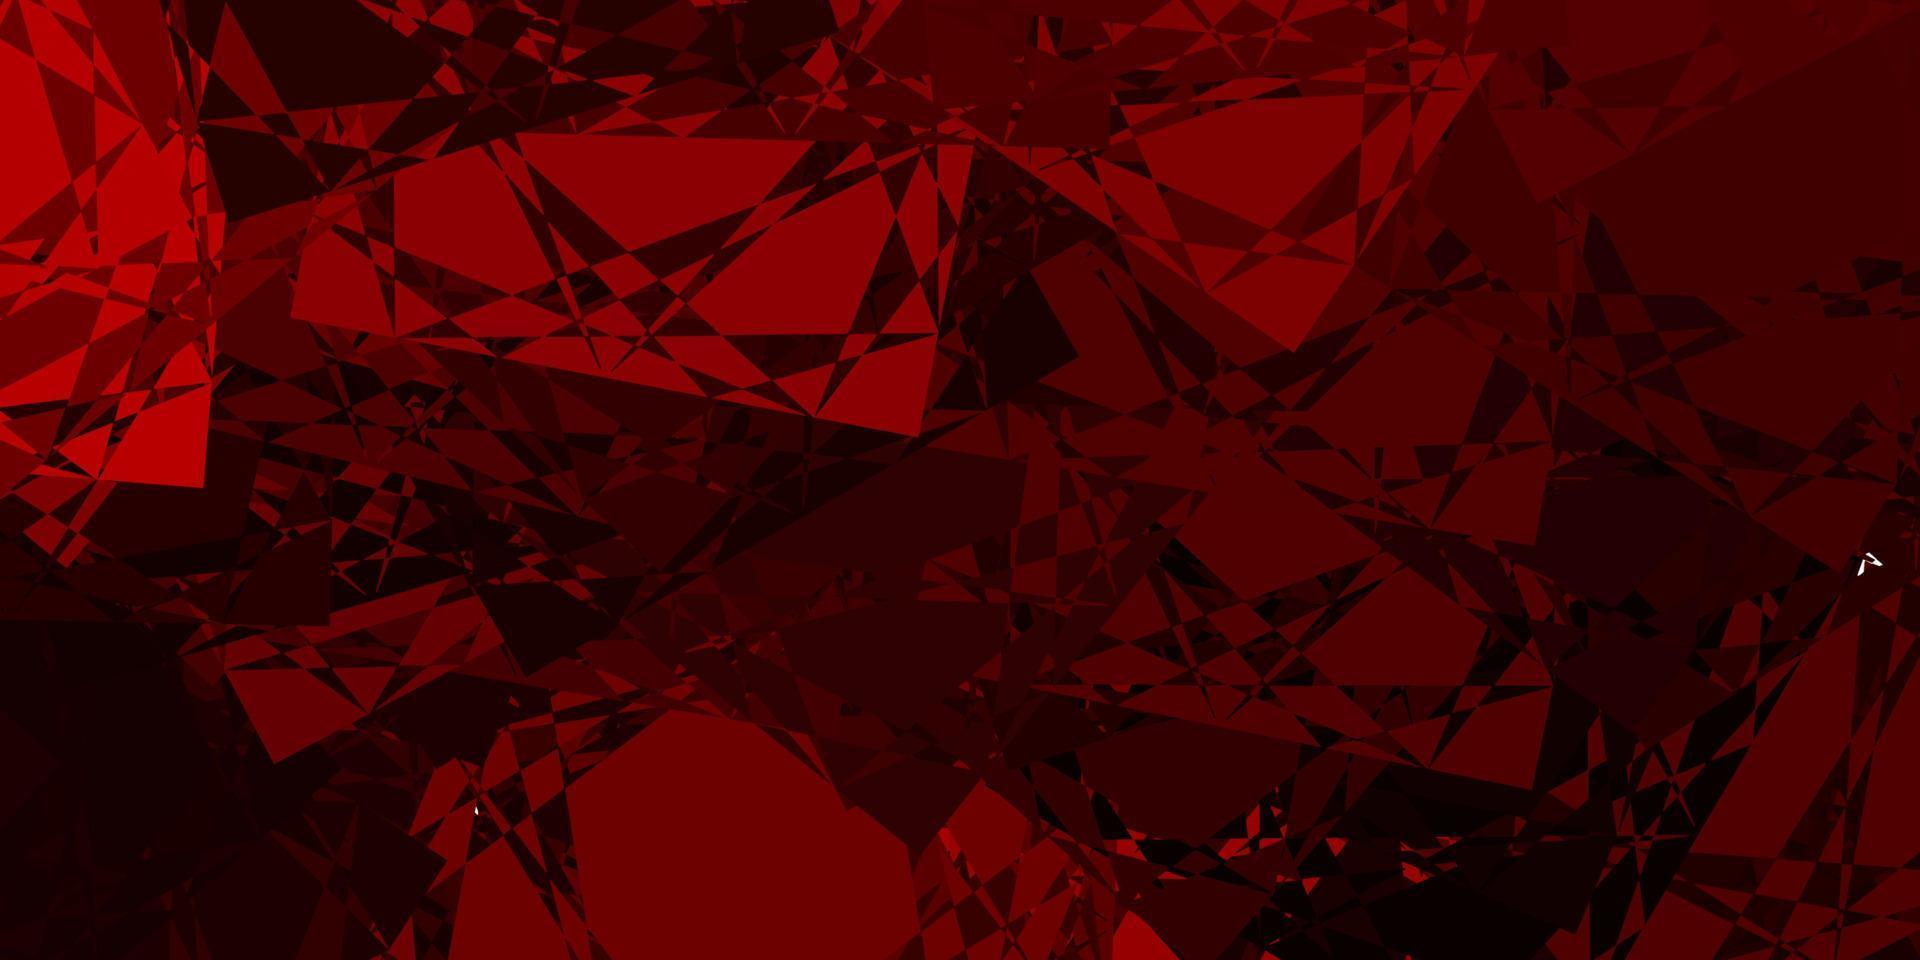 modelo de vetor vermelho escuro com formas de triângulo.